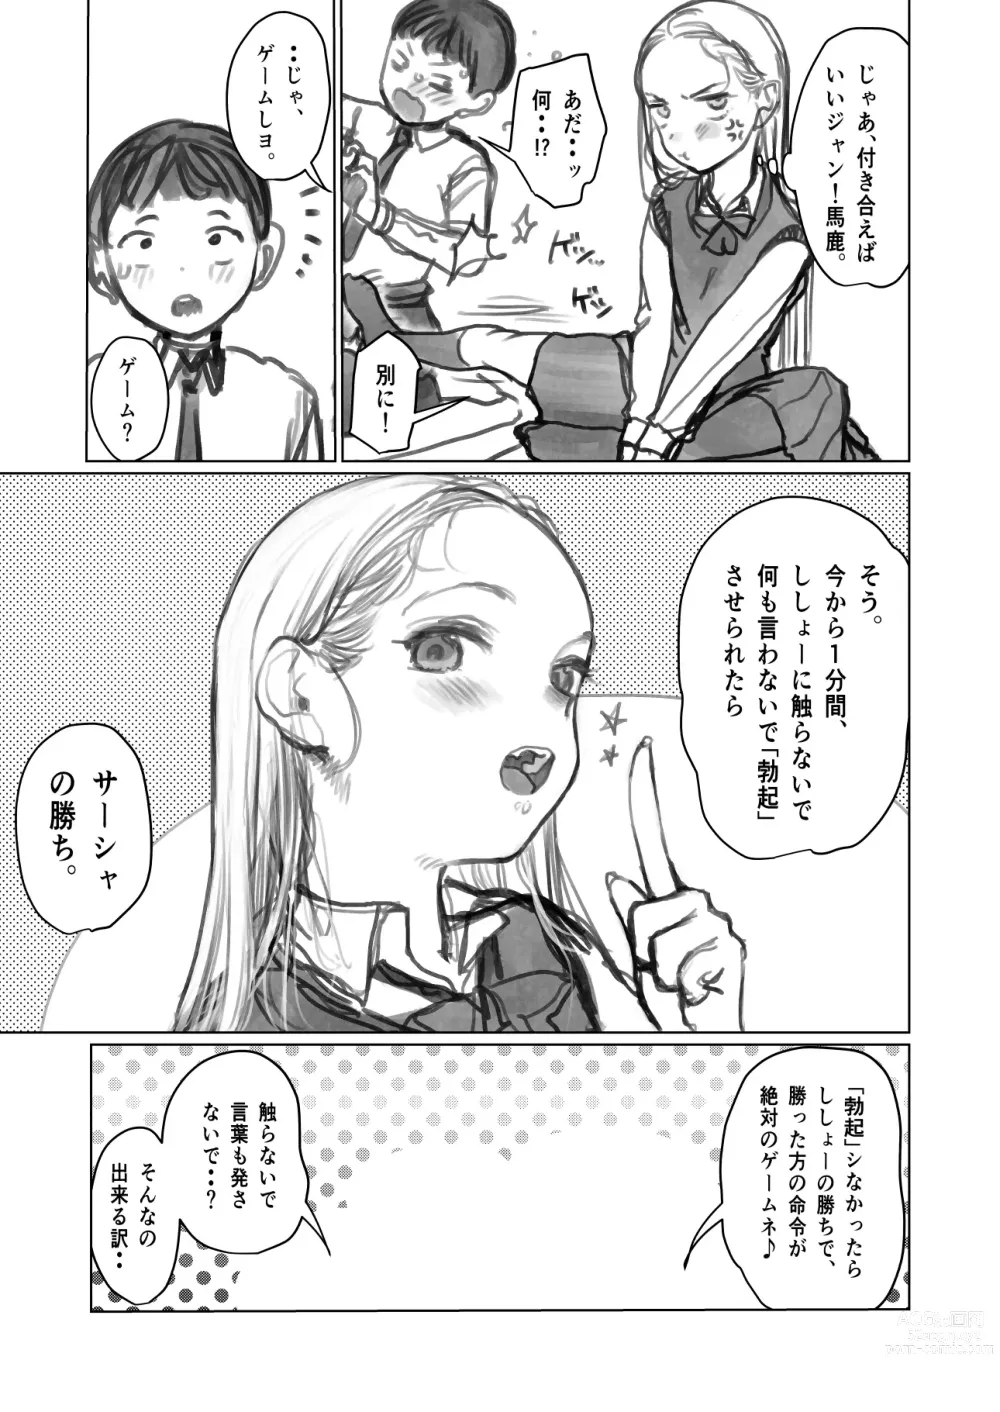 Page 4 of doujinshi Fellasha-chan